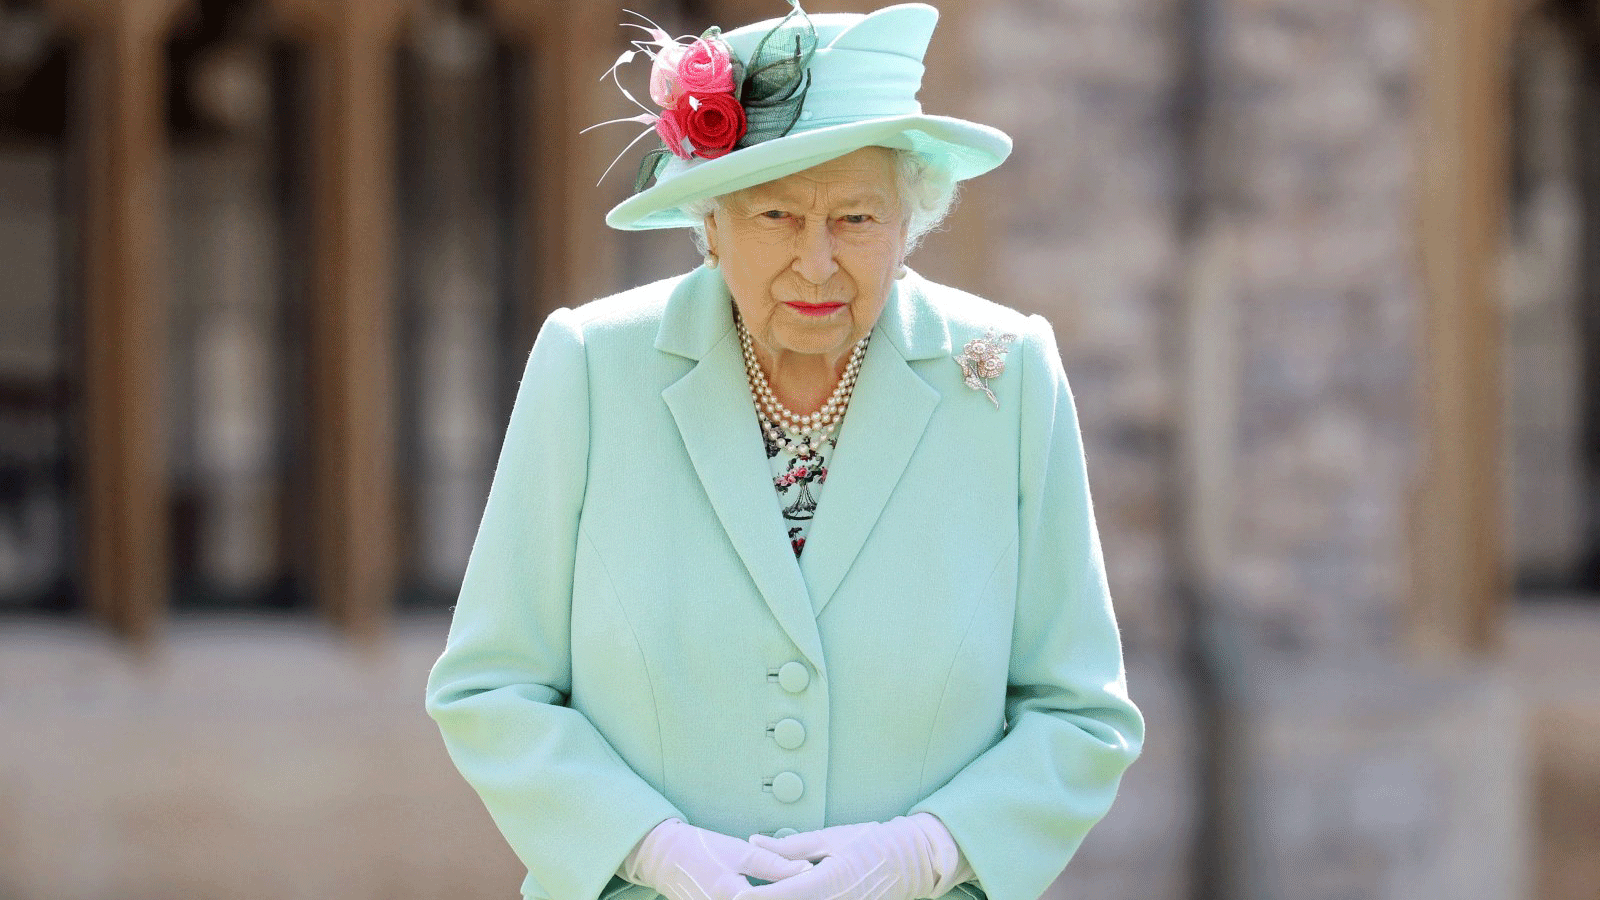 ملكة بريطانيا إليزابيث الثانية تقف بعد منح شرف وسام الفروسية للكابتن المخضرم توم مور البالغ من العمر 100 عام أثناء تنصيبه في قلعة وندسور في المملكة المتحدة. 17 تموز/ يوليو 2020